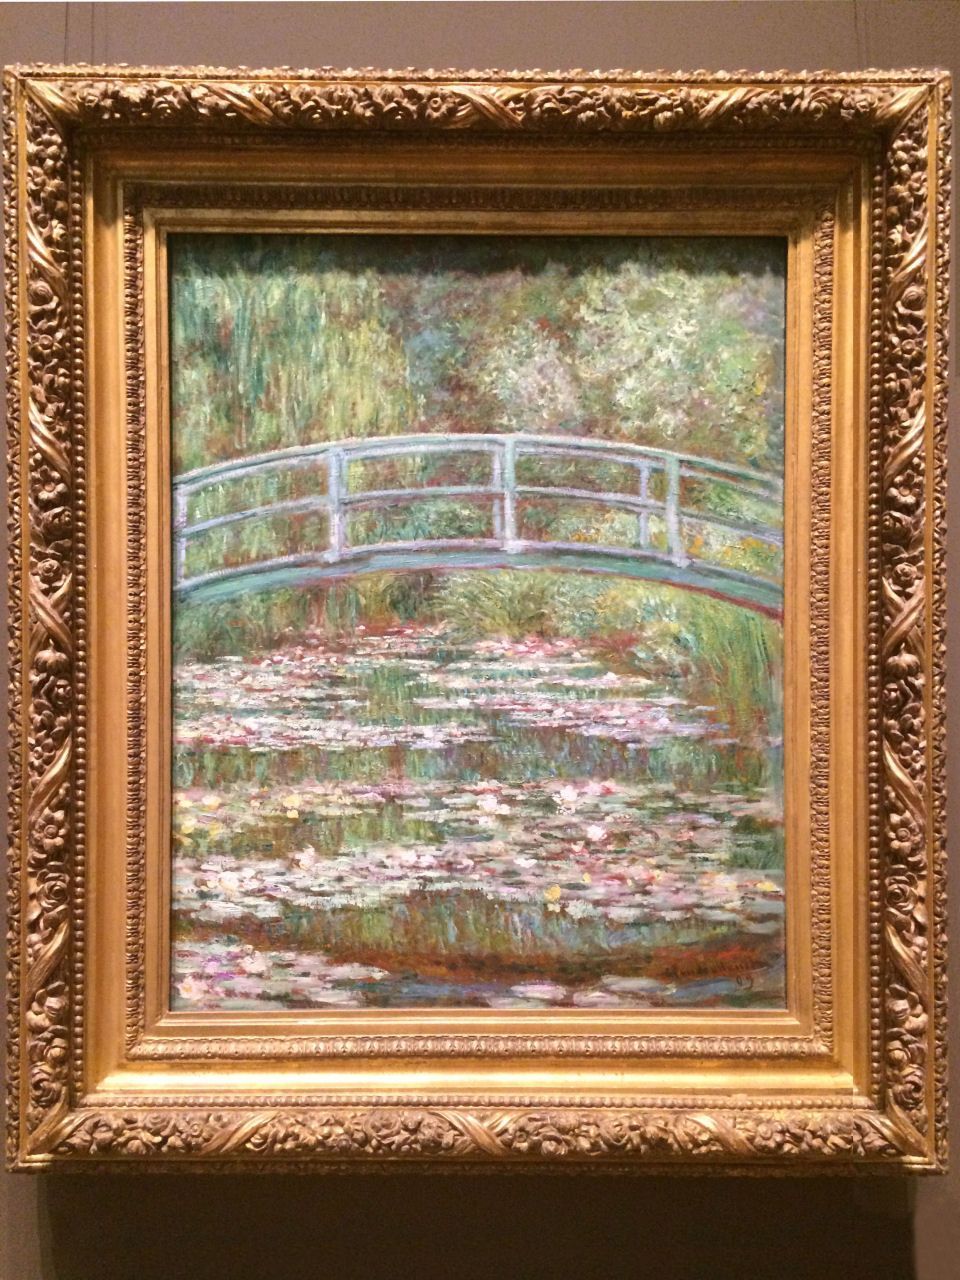 NY：メトロポリタン美術館、睡蓮の池の上の橋(Bridge over a Pond of Water Lilies)